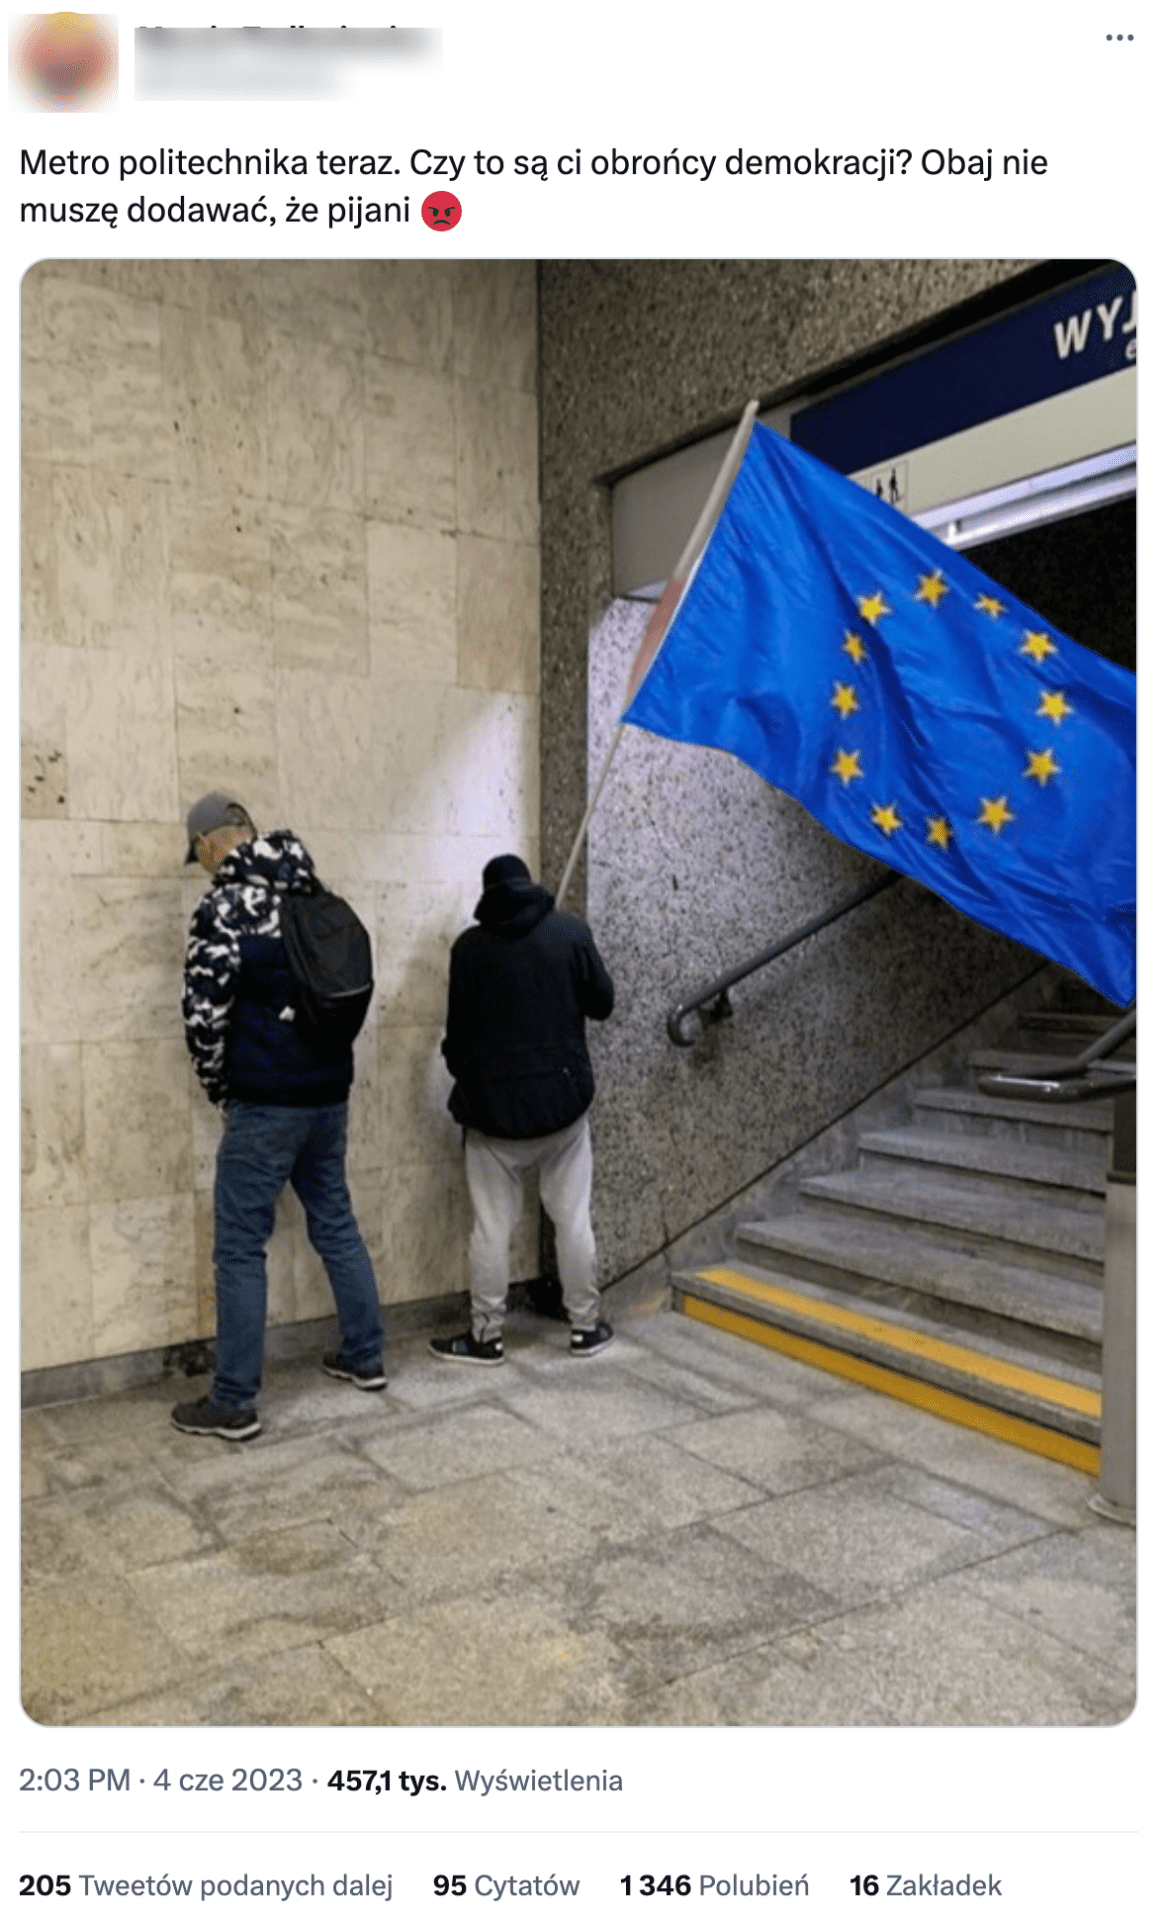 Zrzut ekranu omawianego wpisu na Twitterze. Widoczni są dwa mężczyźni oddający mocz na stacji metra. Jeden z nich trzyma w ręku flagę Unii Europejskiej.